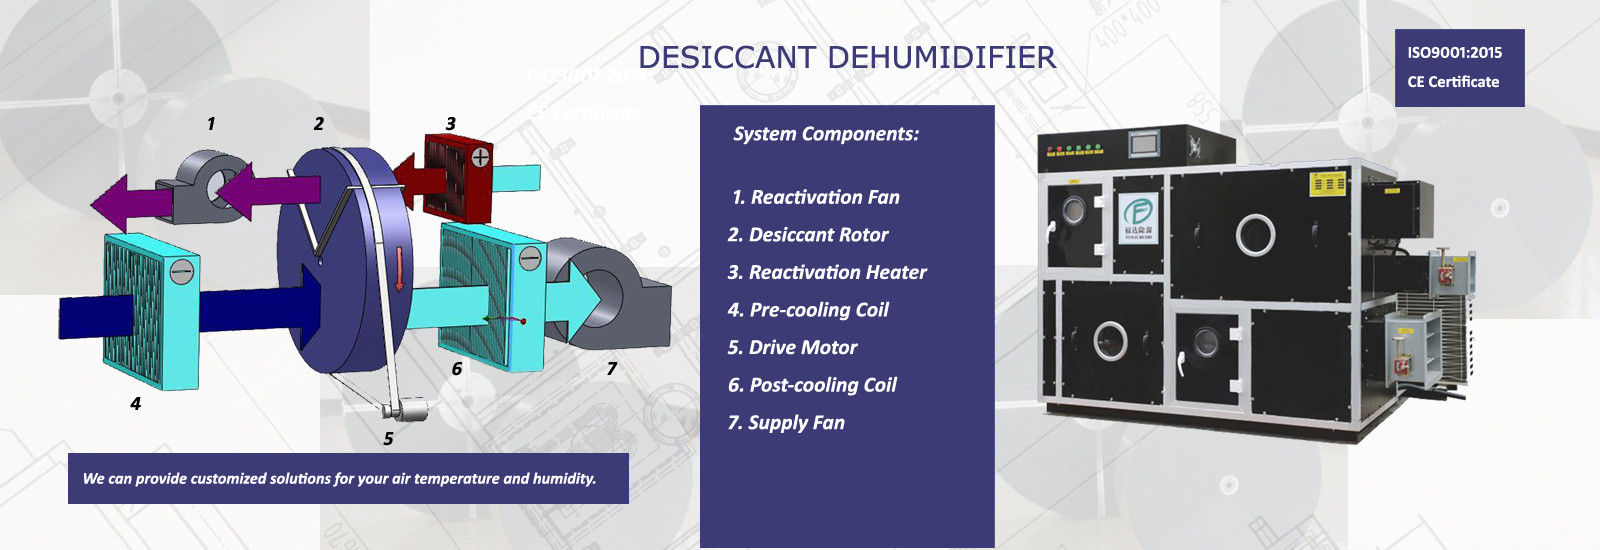 качество промышленный dehumidifier осушителя фабрика